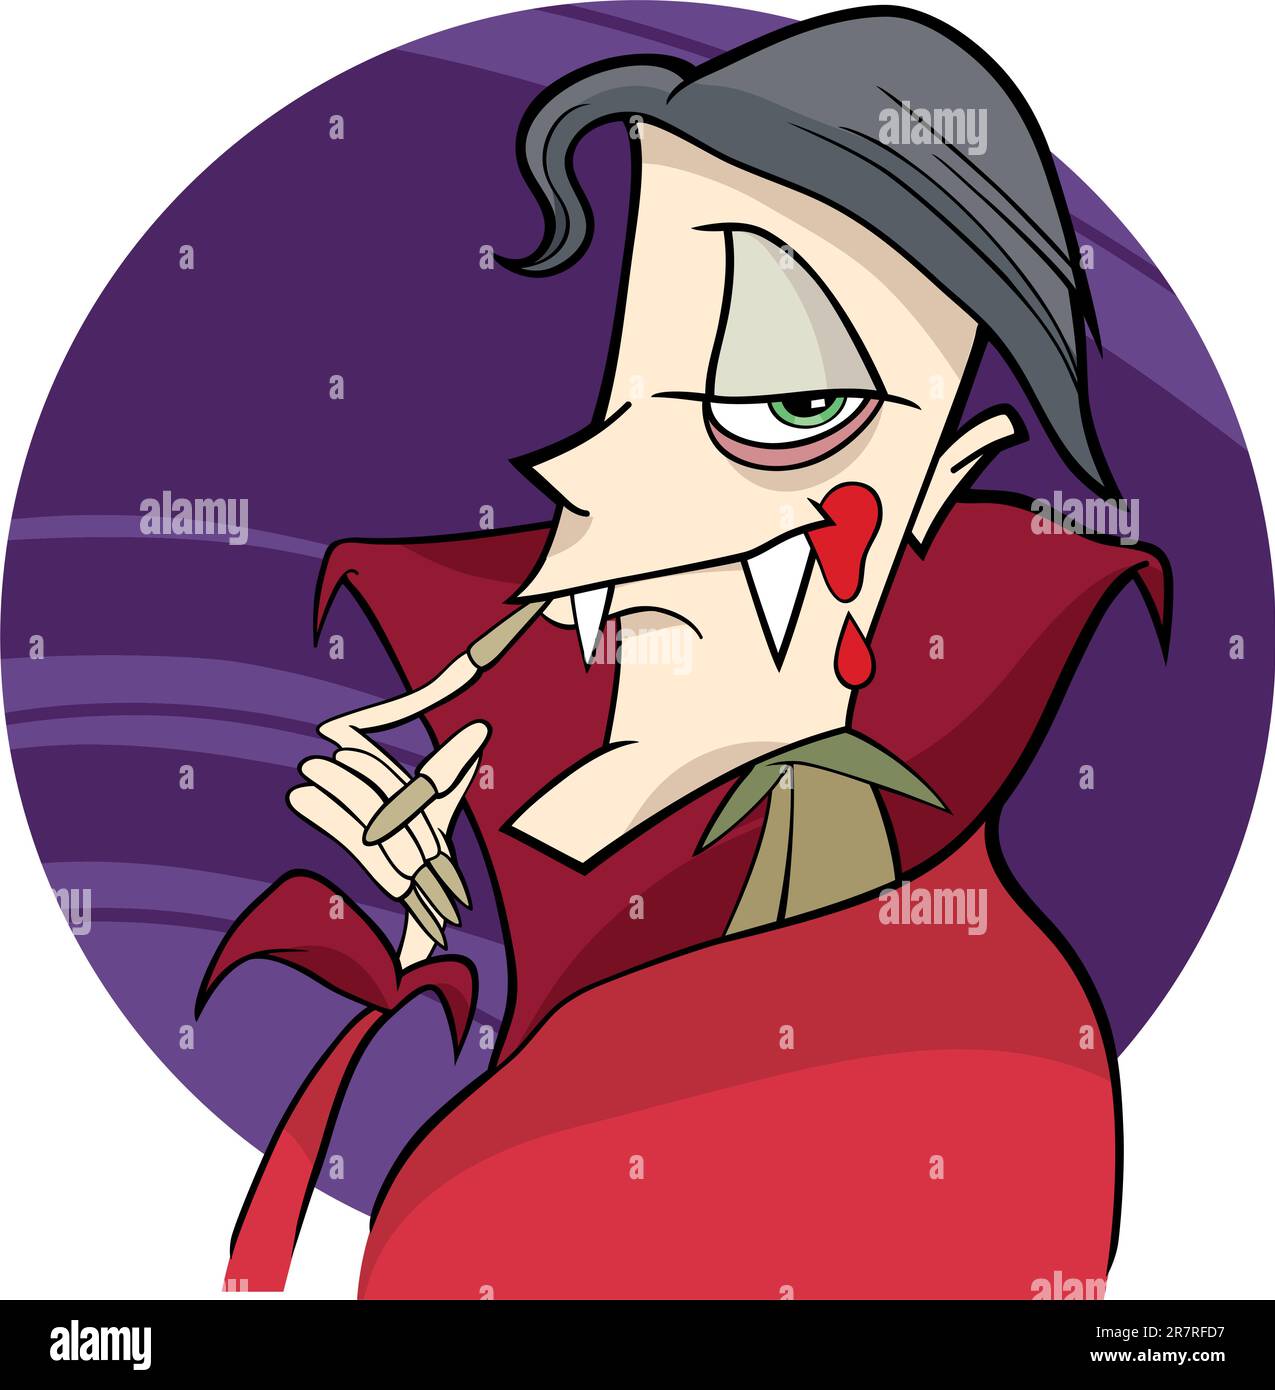 Cartoon-Illustration des lustigen Vampir Stock Vektor